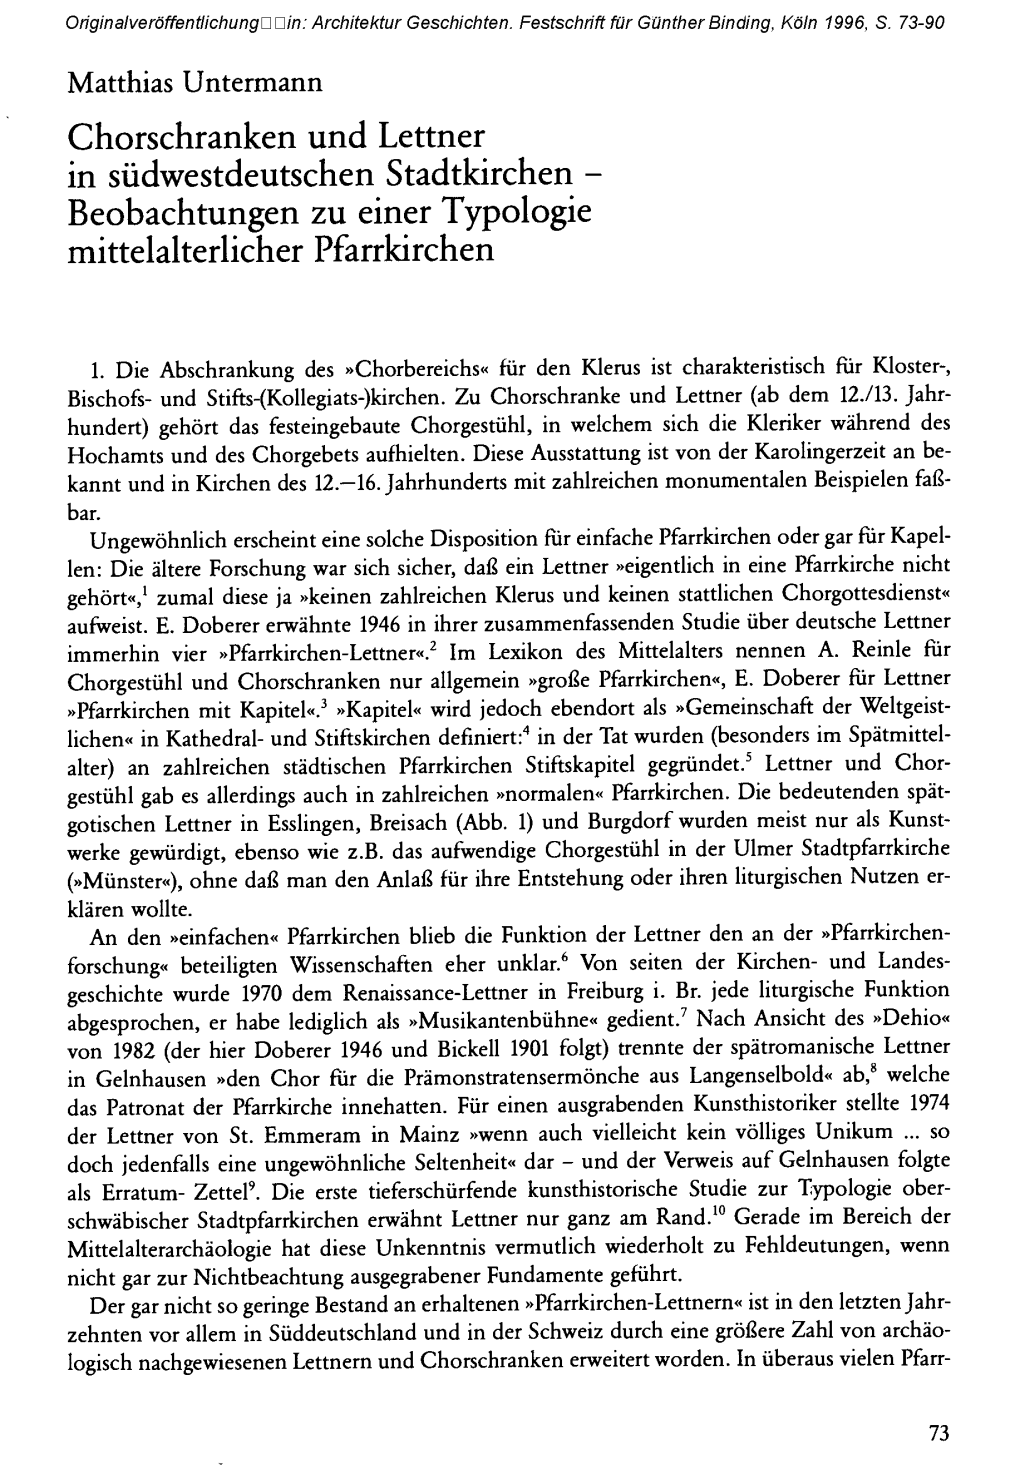 Chorschranken Und Lettner in Südwestdeutschen Stadtkirchen - Beobachtungen Zu Einer Typologie Mittelalterlicher Pfarrkirchen